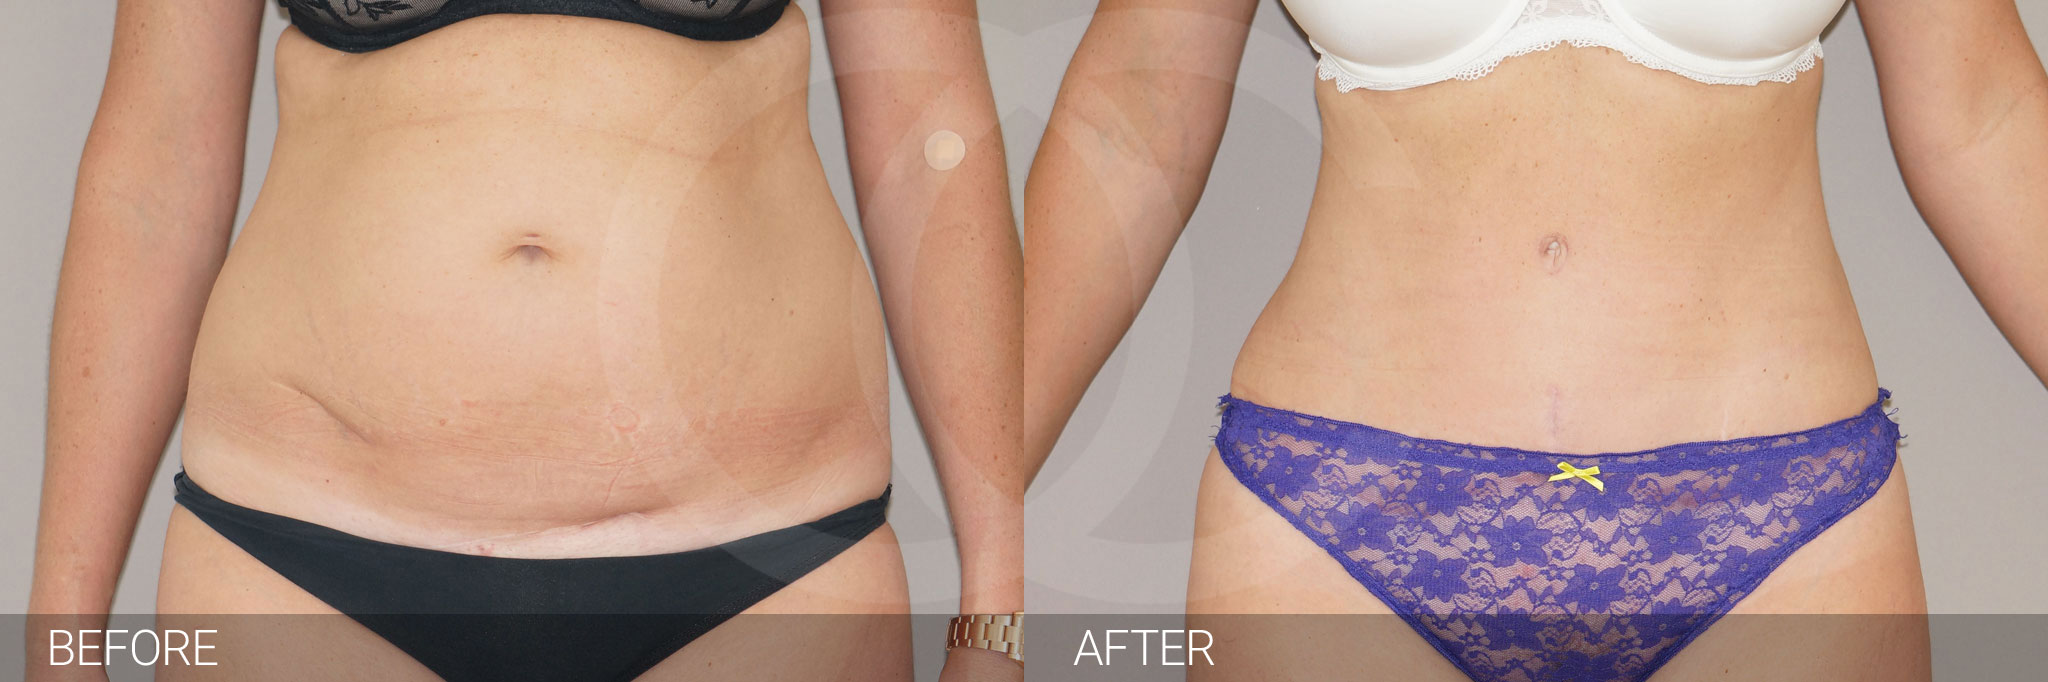 Antes y después Fotos de reducción de abdomen fotos reales de pacientes 4.1 | Ocean Clinic Marbella Madrid